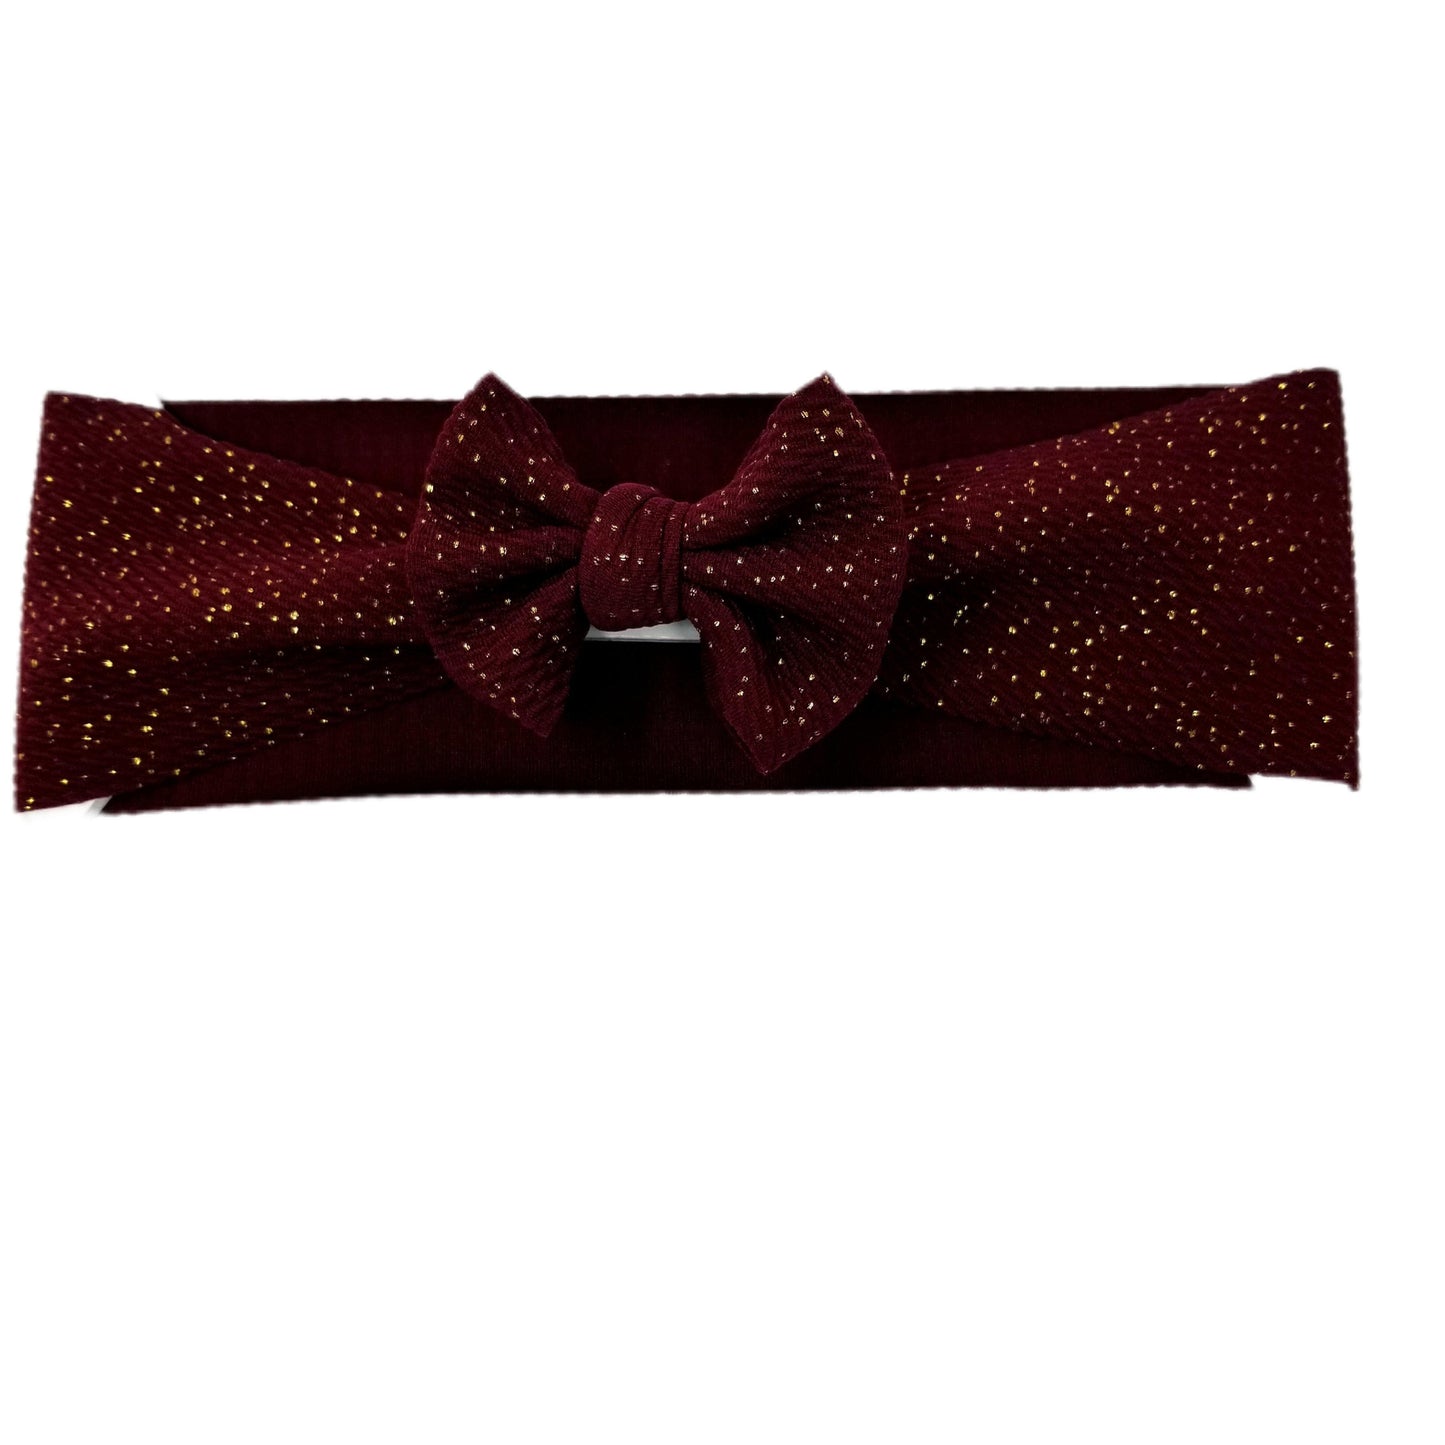 Gold-flecked Burgundy Fabric Bow Headwrap 3"